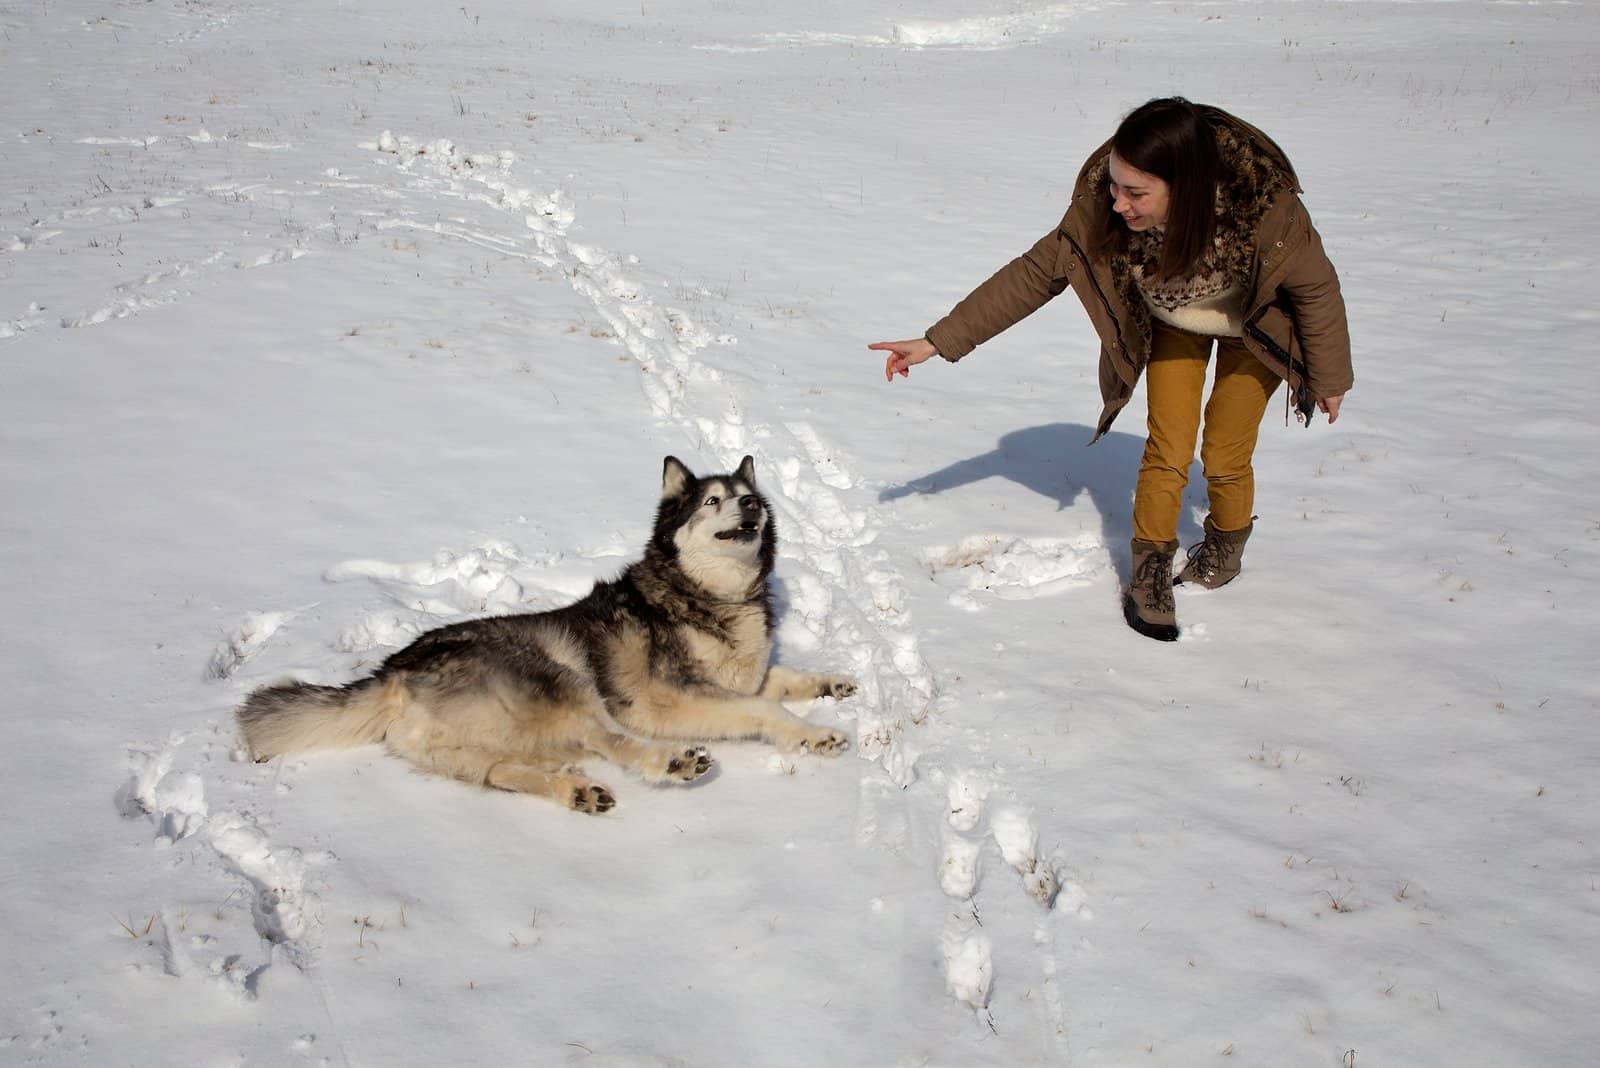 a woman trains an Alaskan Malamute in the snow